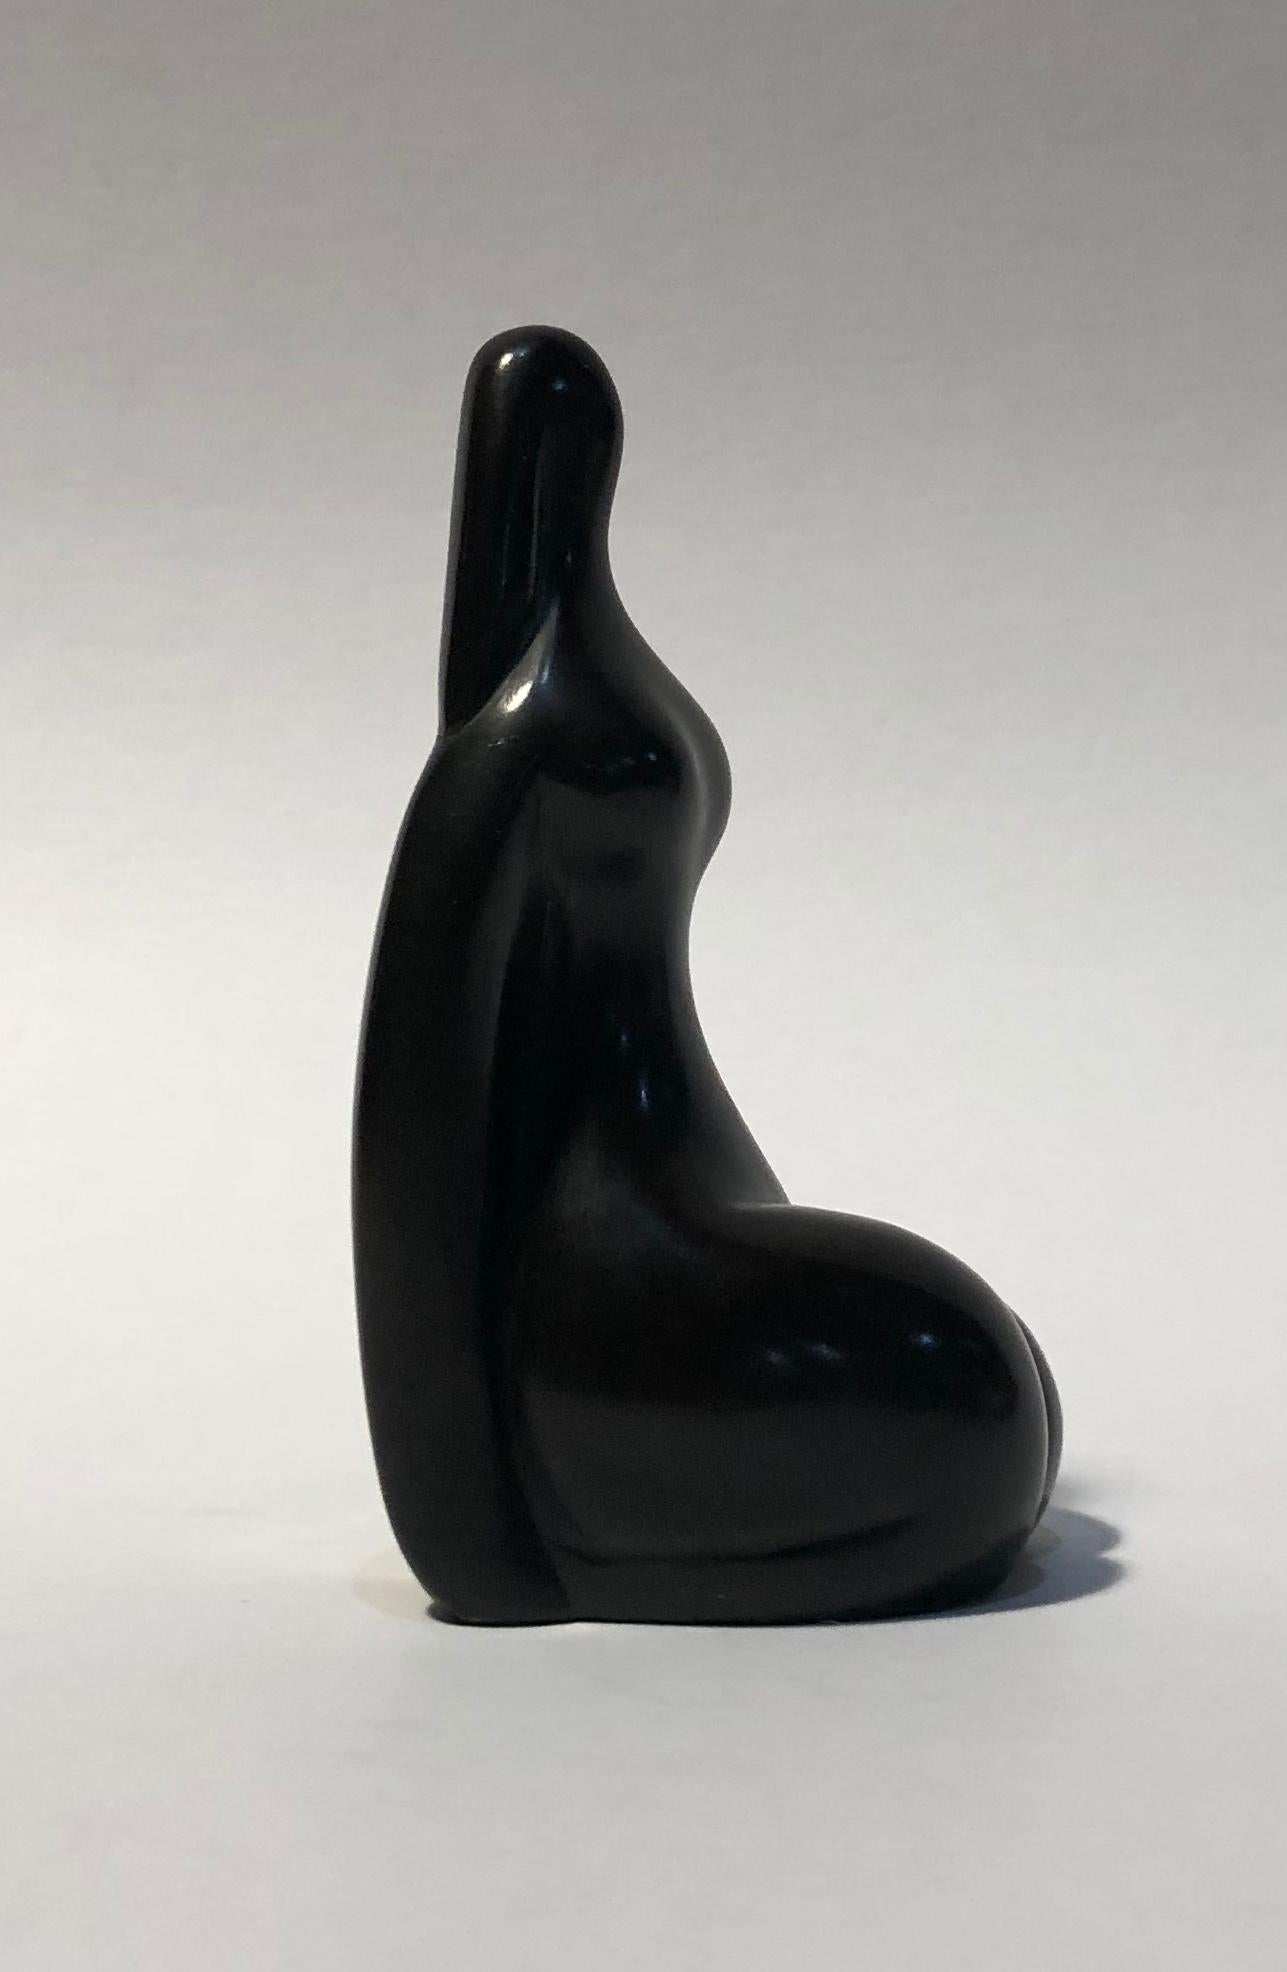 Femme nue assise - Or Figurative Sculpture par Louis Bancel